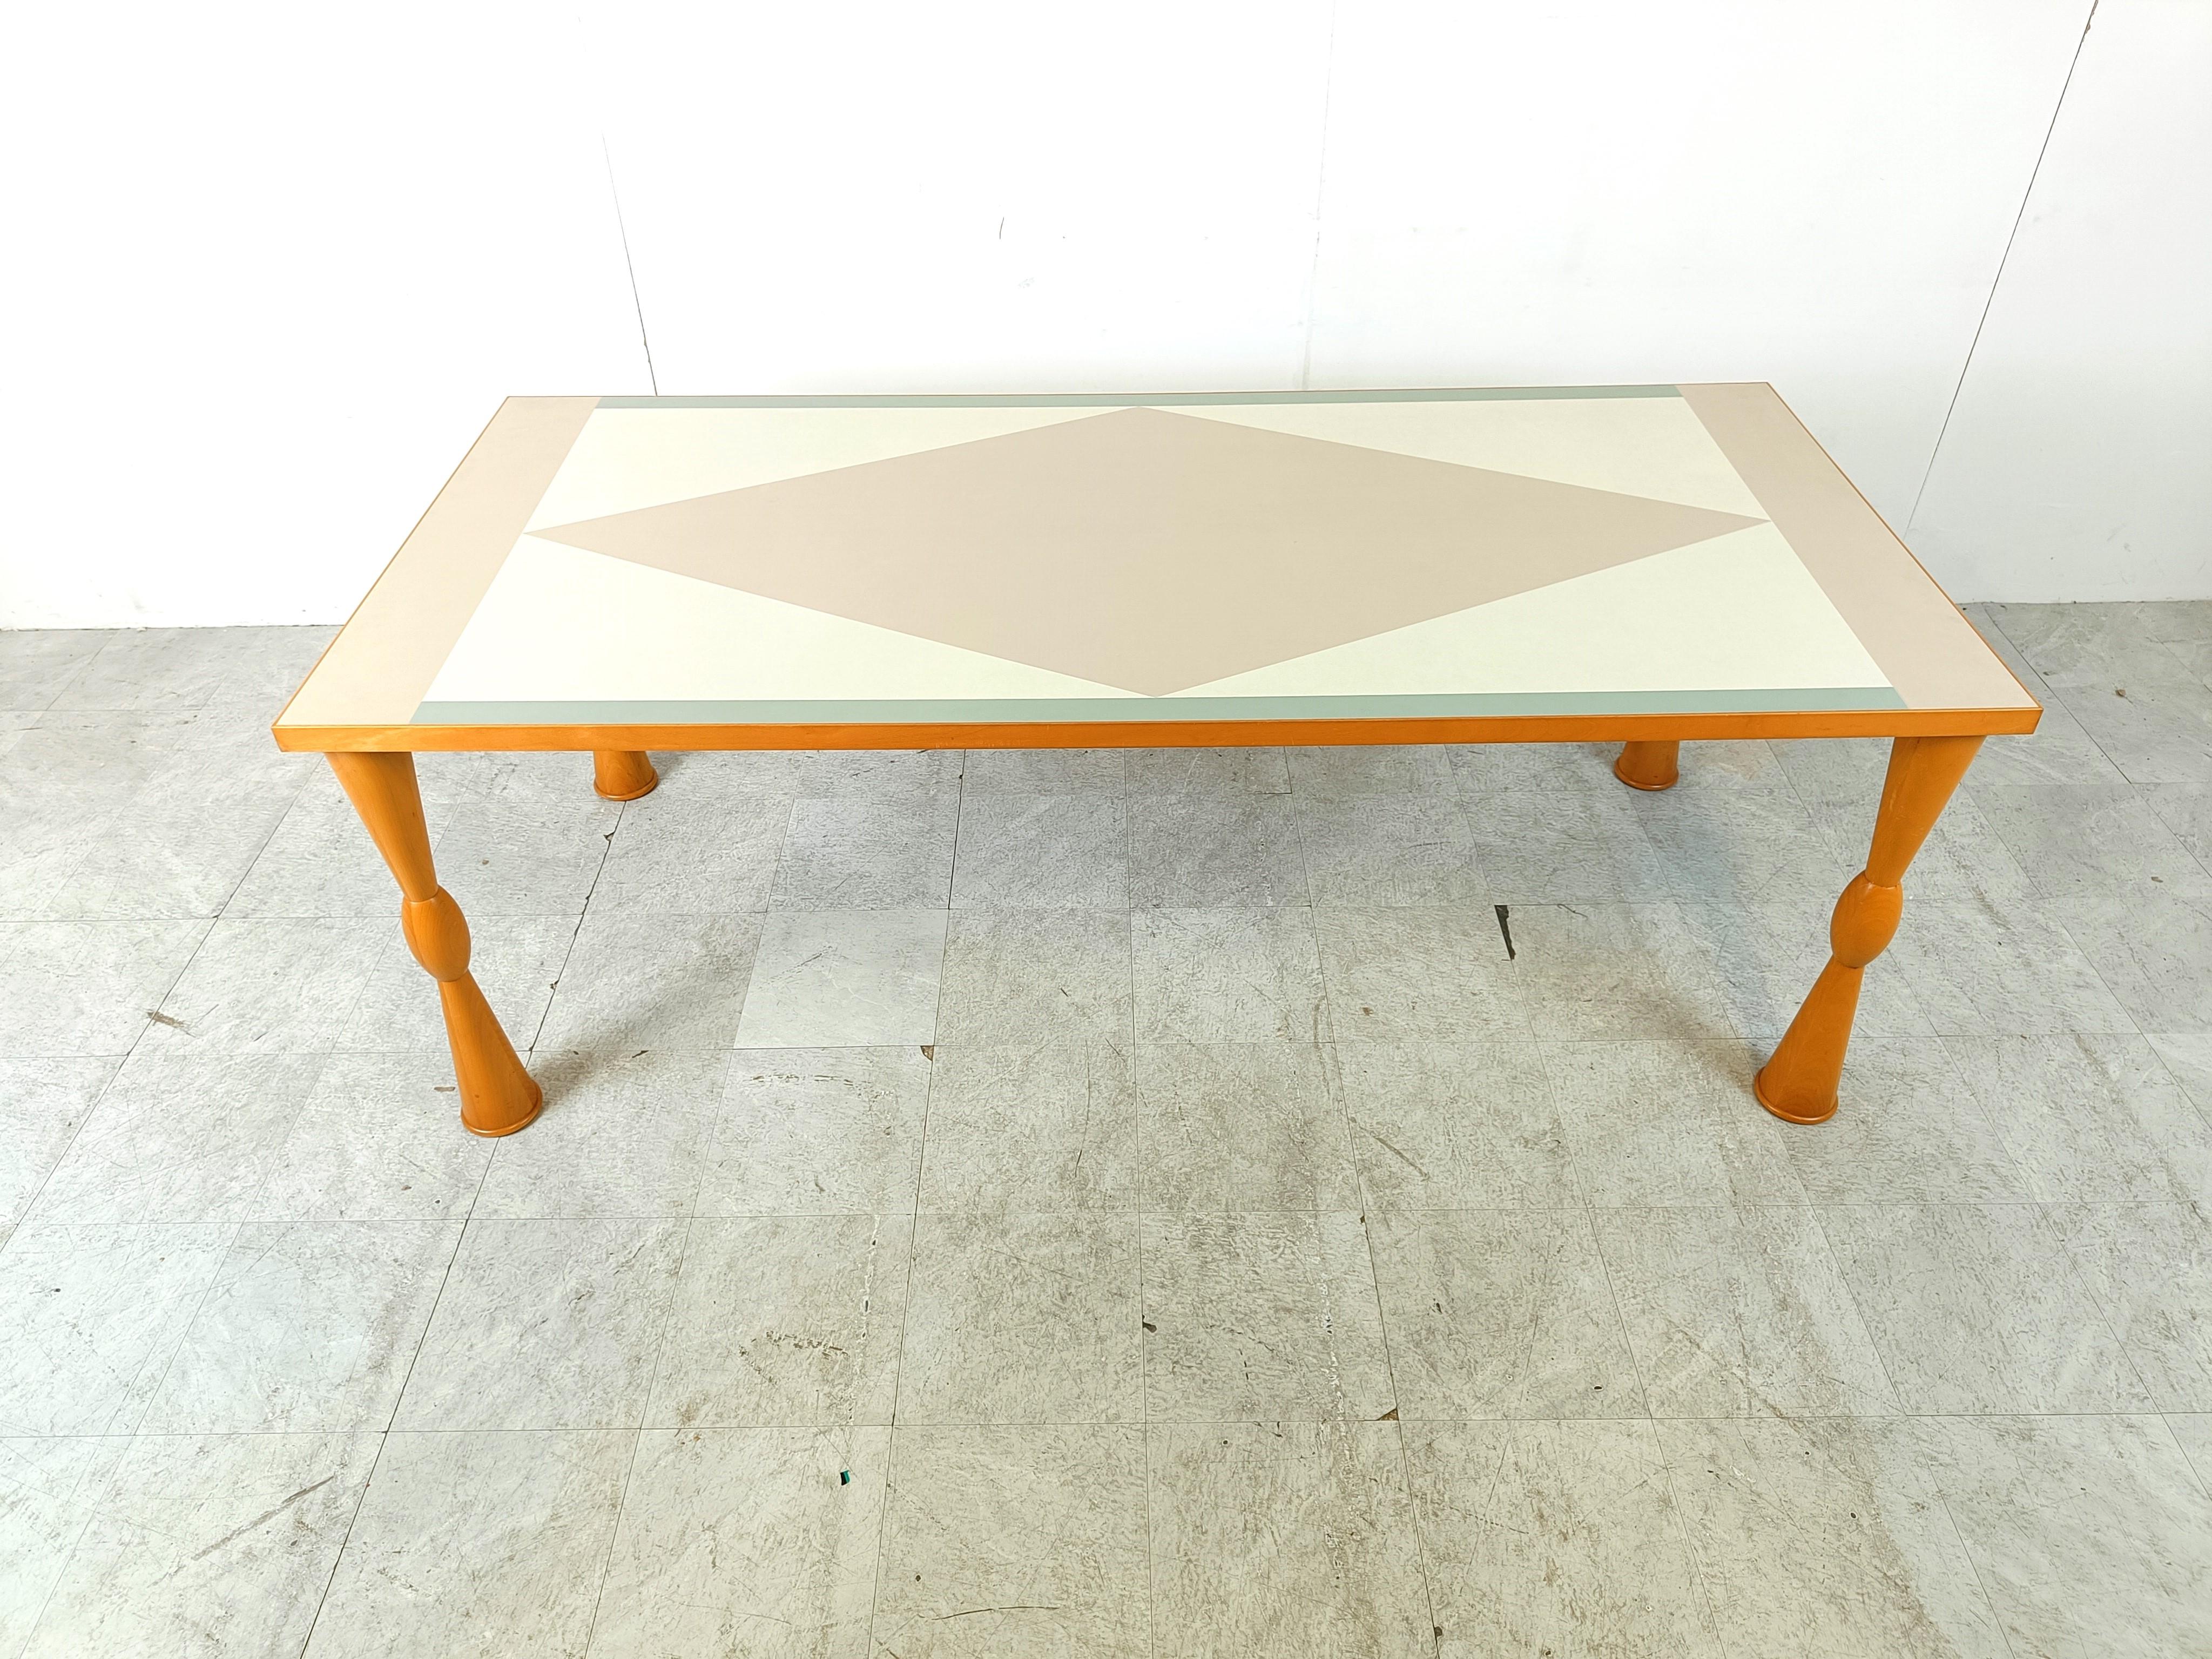 Table de salle à manger postmoderne conçue par Ettore Sottsass pour Zanotta Italie.

Un design 